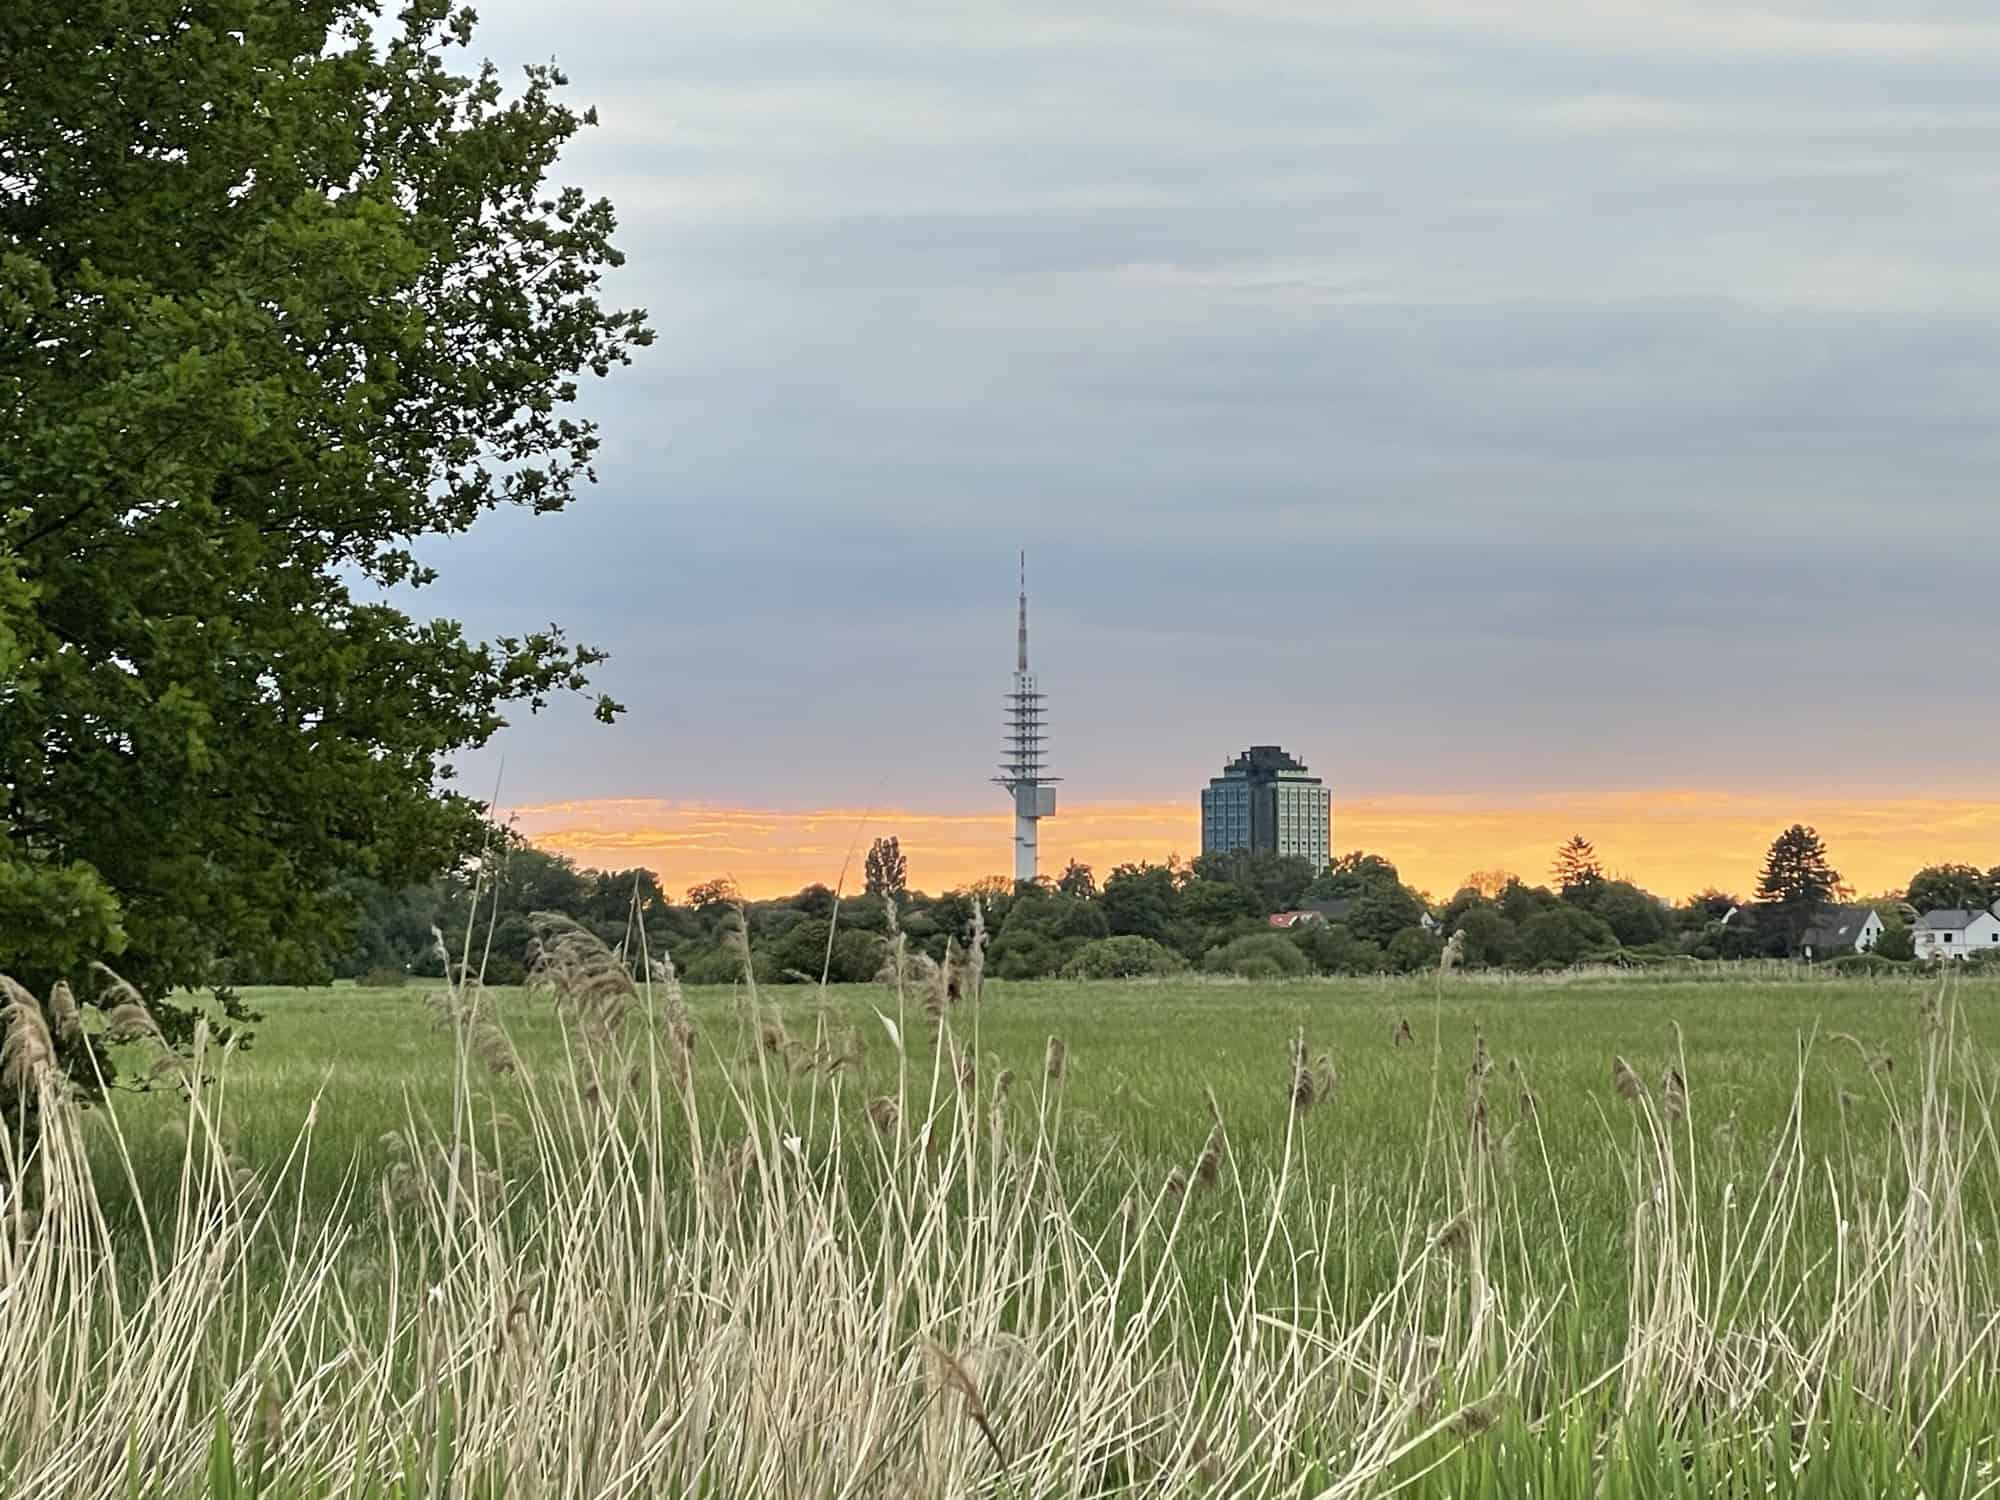 Siluette mit Telemax und Bersdorf-Tower bei orange-gelben Abendrot